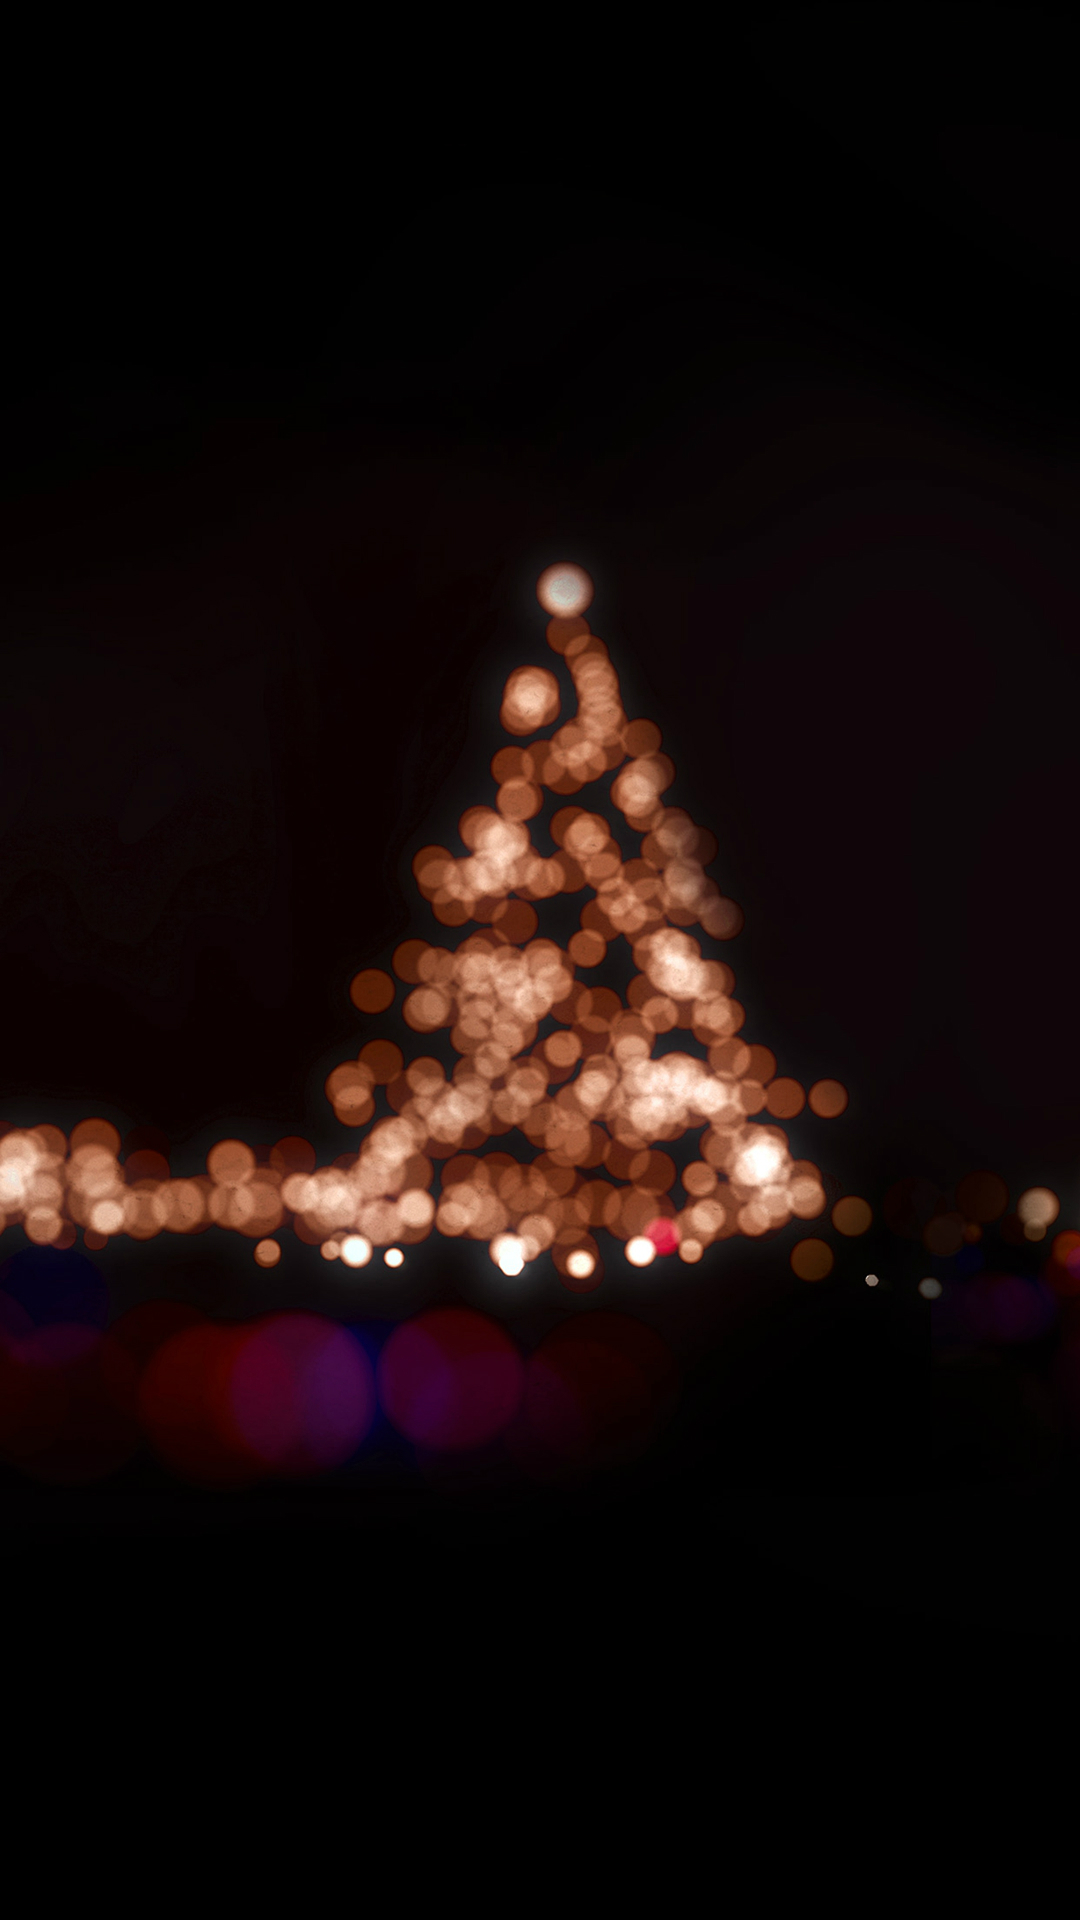 15 hình nền merry christmas đẹp lung linh cho iphone - Hình 13